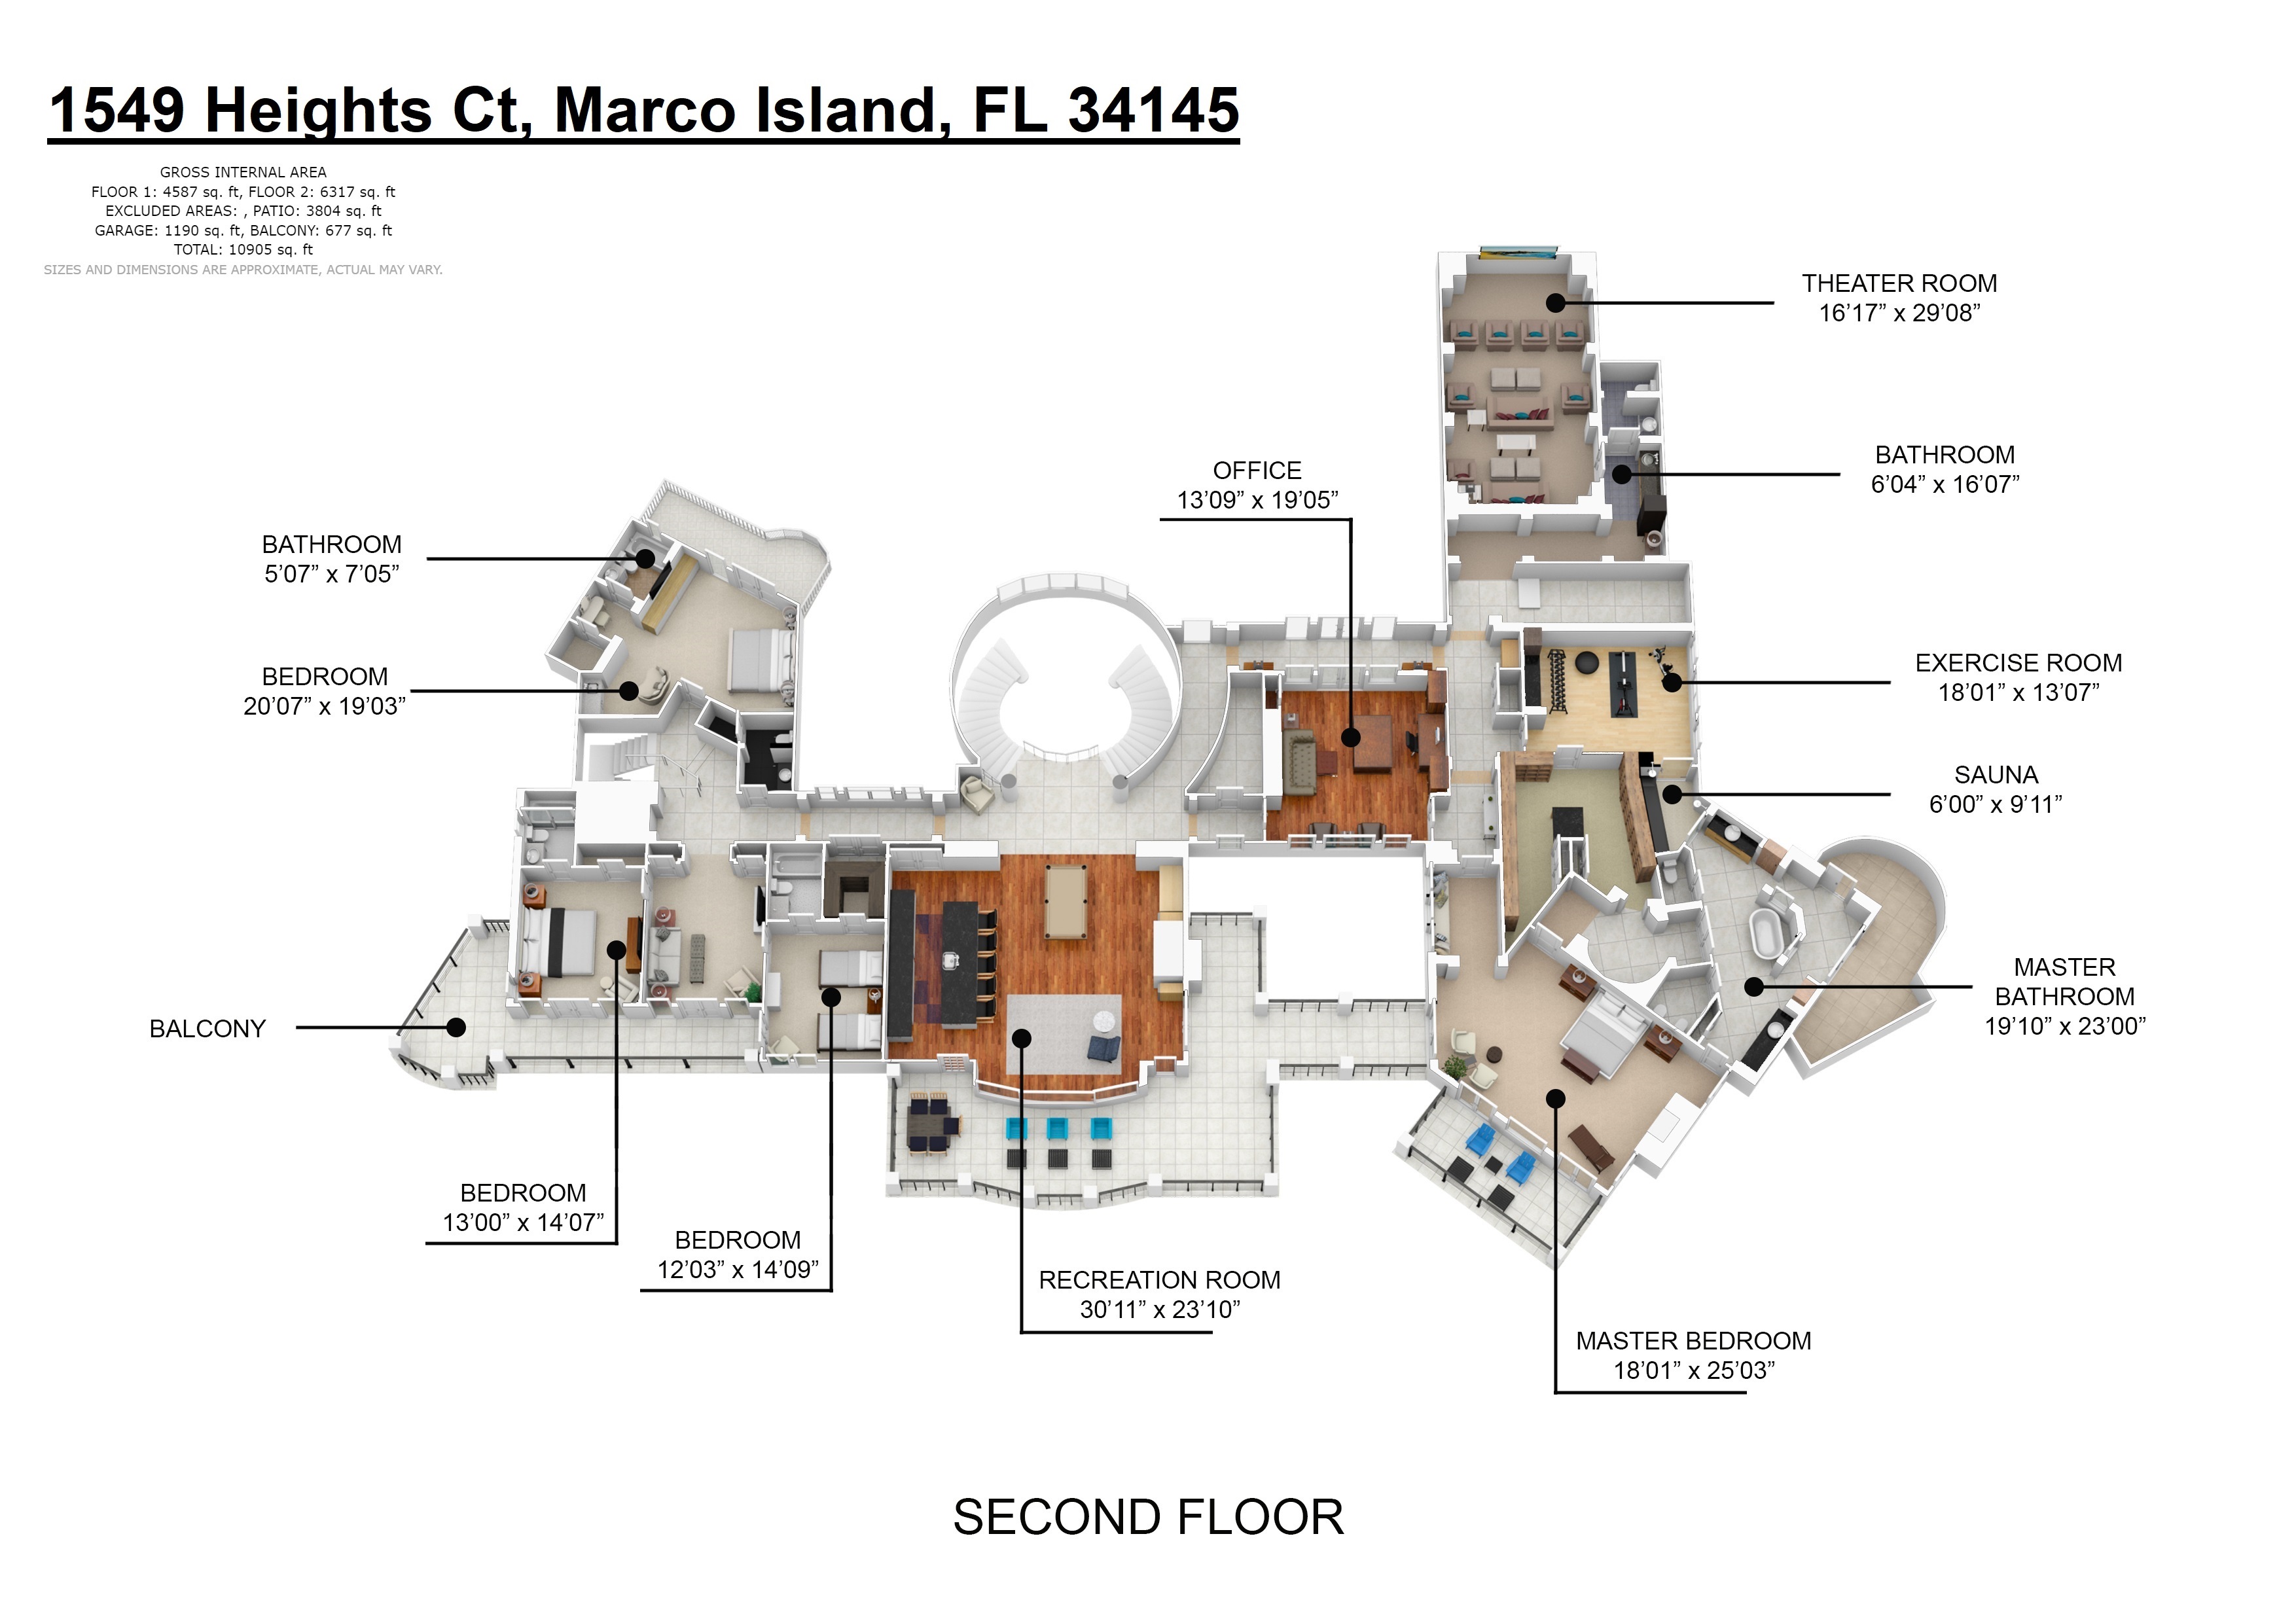 1549 Heights Ct, Marco Island, FL 34145 floor plan